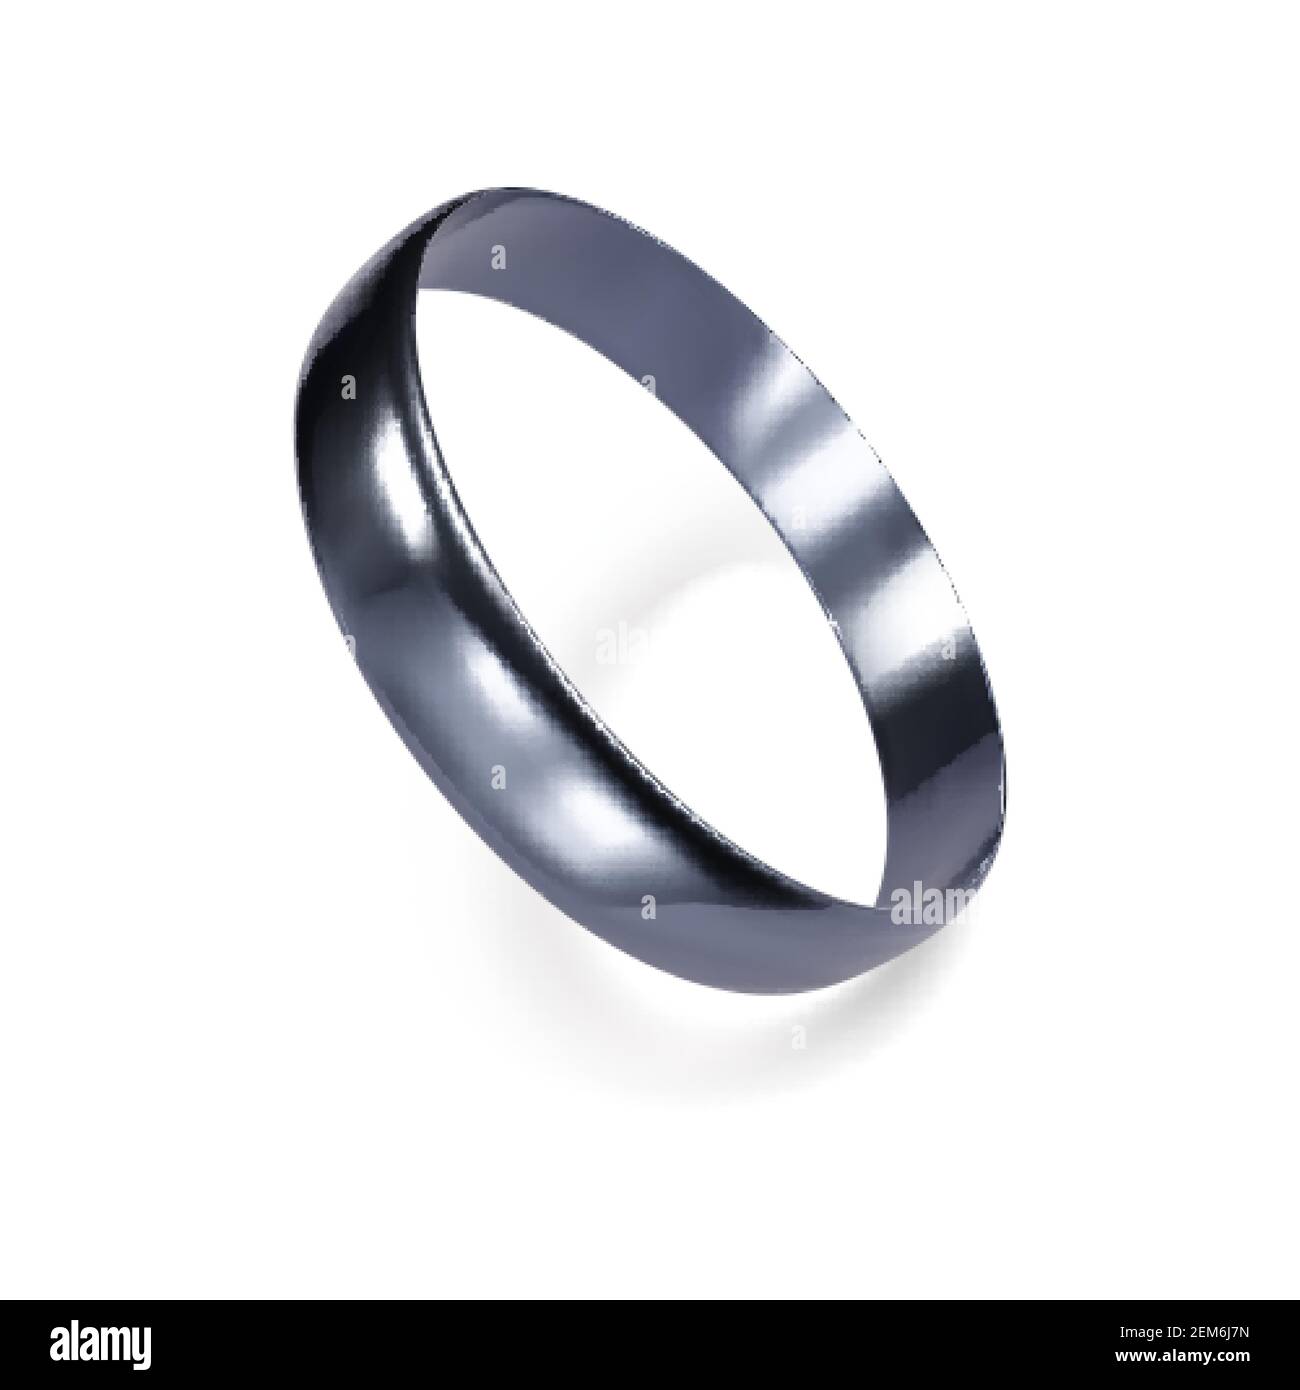 Anello realistico in oro bianco o argento. Rendering 3D dell'anello in platino. Illustrazione vettoriale Illustrazione Vettoriale